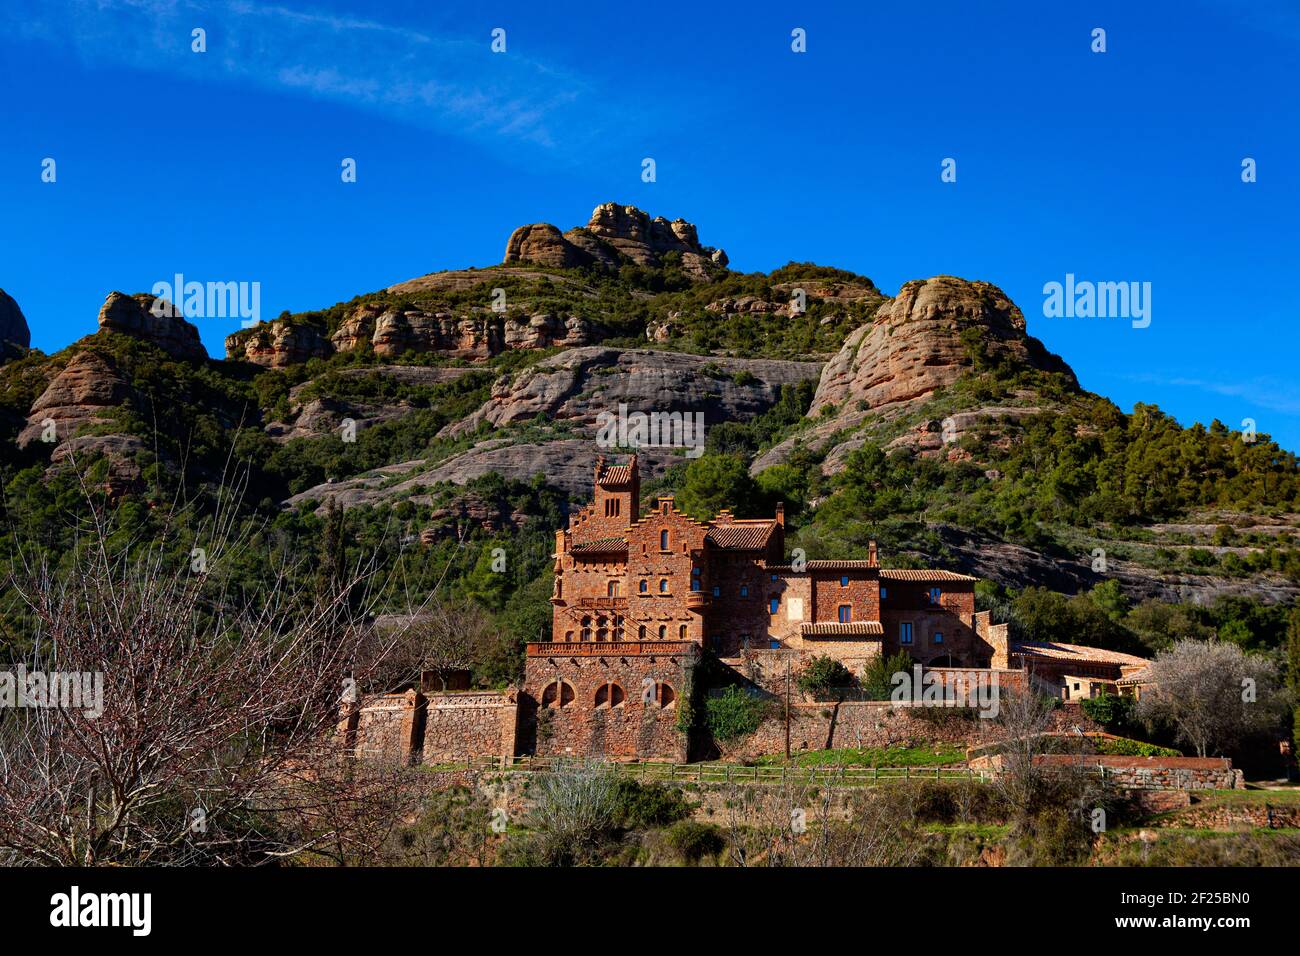 Marquet de les Roques, Vall d'Horta, Sant Llorenç del Munt i l'Obac, Catalunya, Spagna. La casa originale risale a 1200, ma questa struttura Foto Stock